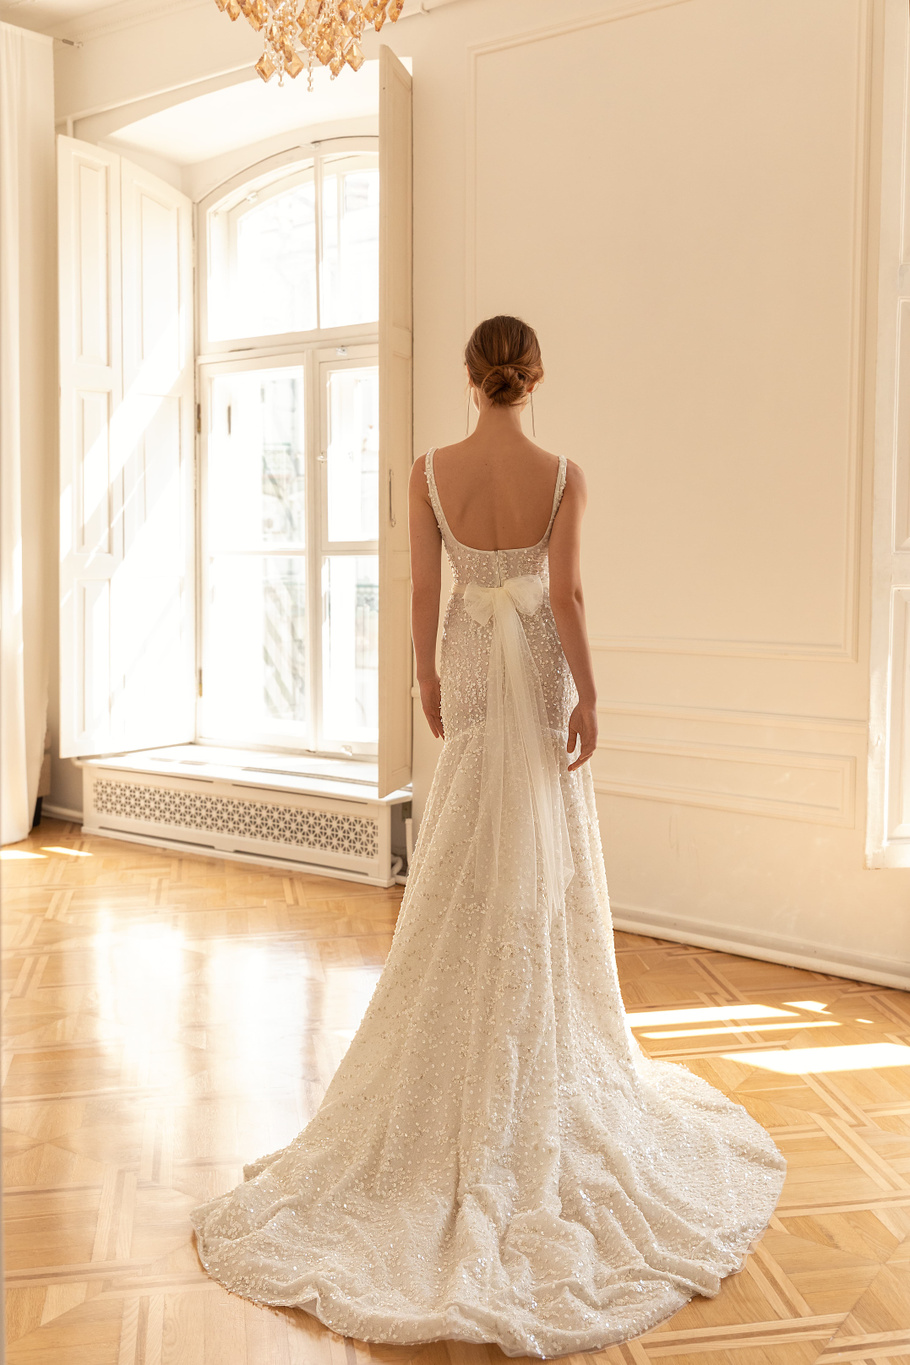 Купить свадебное платье «Калабрия» Евы Лендел из коллекции 2022 в «Мэри Трюфель»